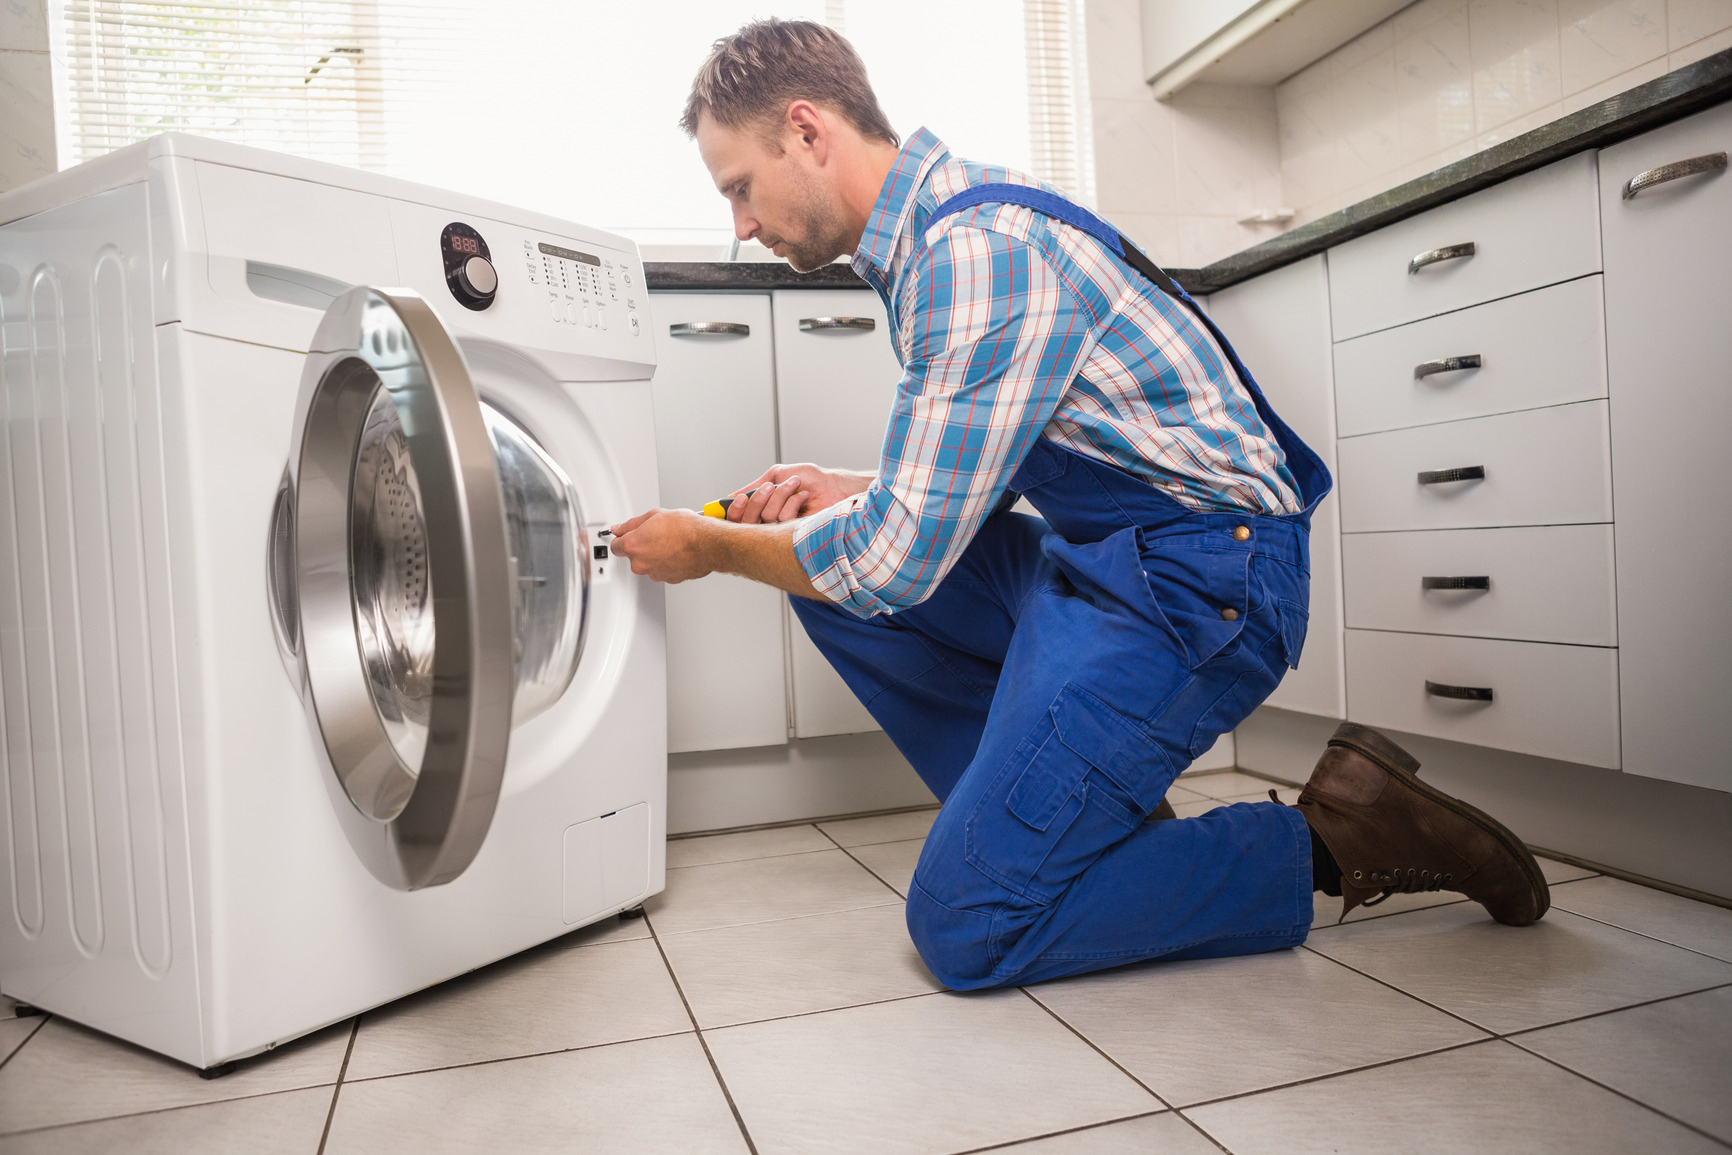 Sau khi hoàn chỉnh các bước lắp máy giặt trên bạn có thể bắt đầu sử dụng